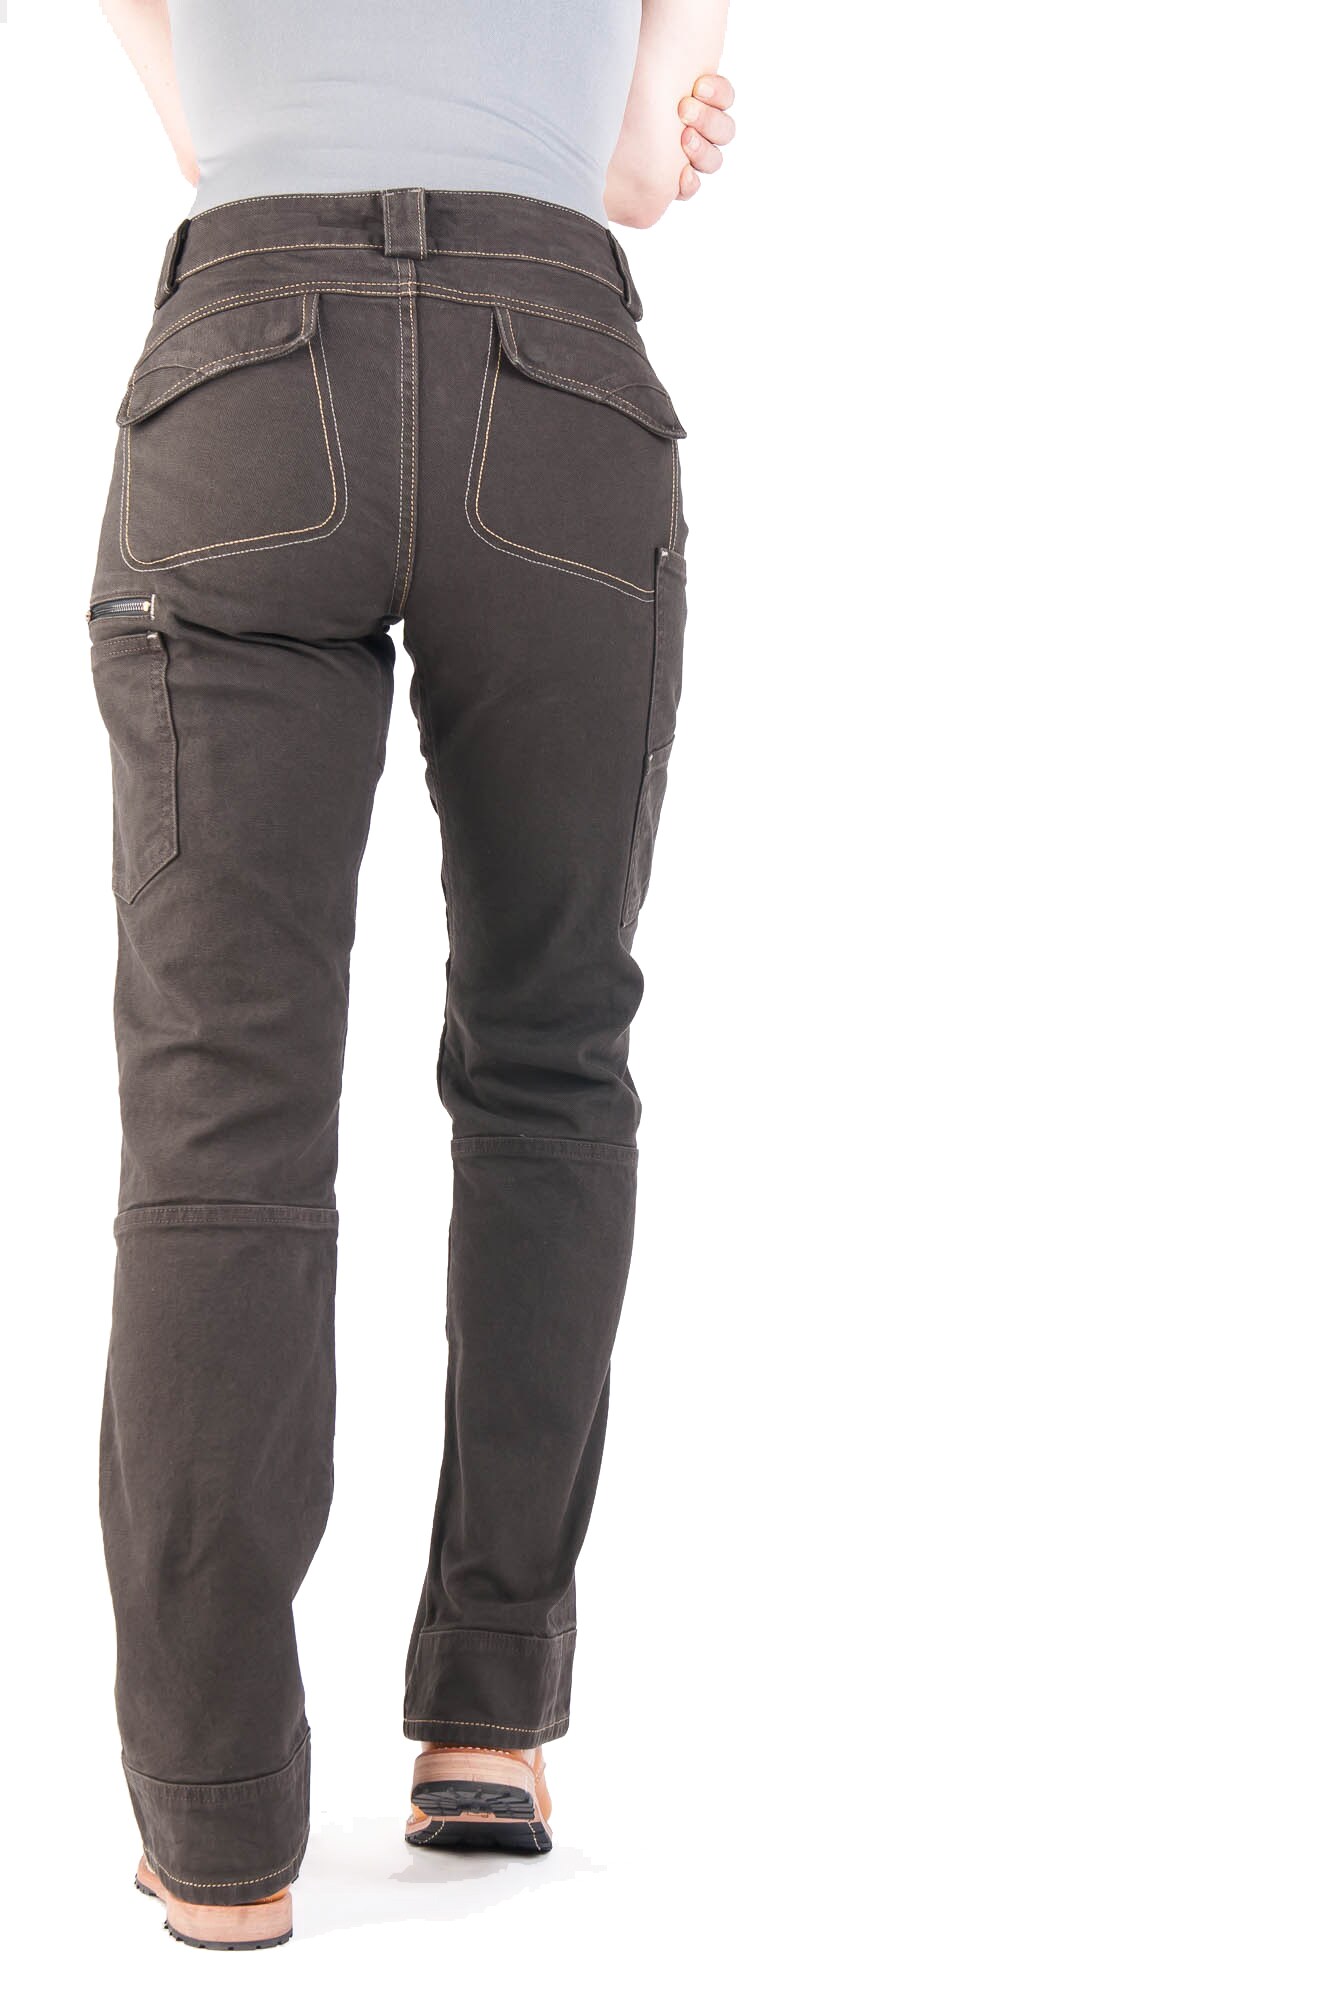 Dovetail Workwear Women's Dark Brown Canvas Work Pants (4 X 32) in